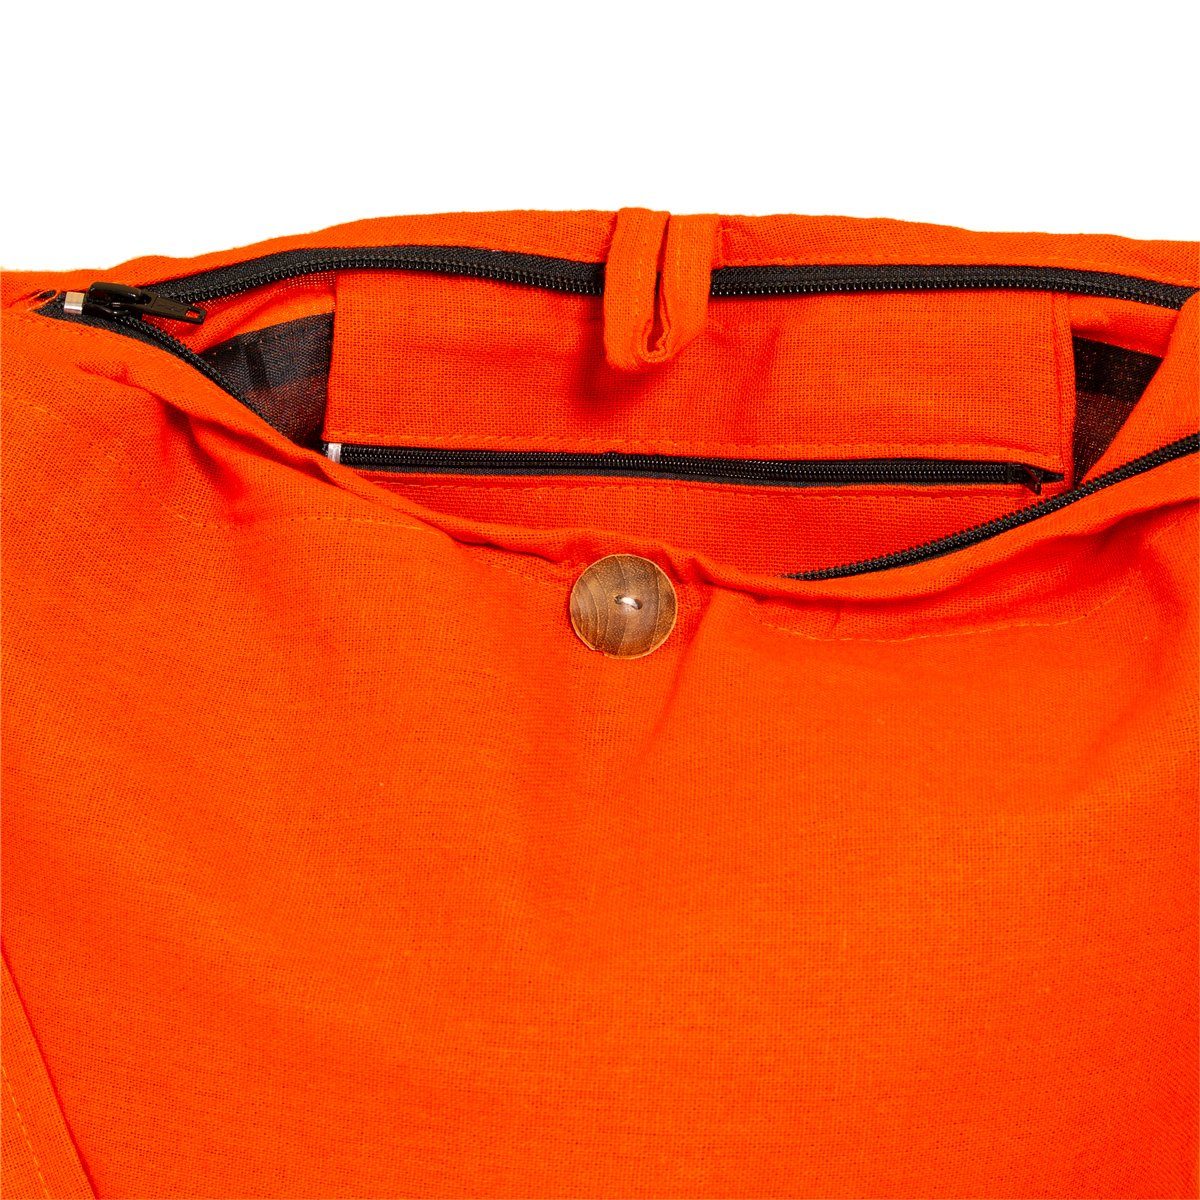 Handtasche 2 Schultertasche einfarbig Wickeltasche aus Größen, PANASIAM Umhängetasche Strandtasche Schulterbeutel Orange 100% als Beuteltasche oder Baumwolle in auch